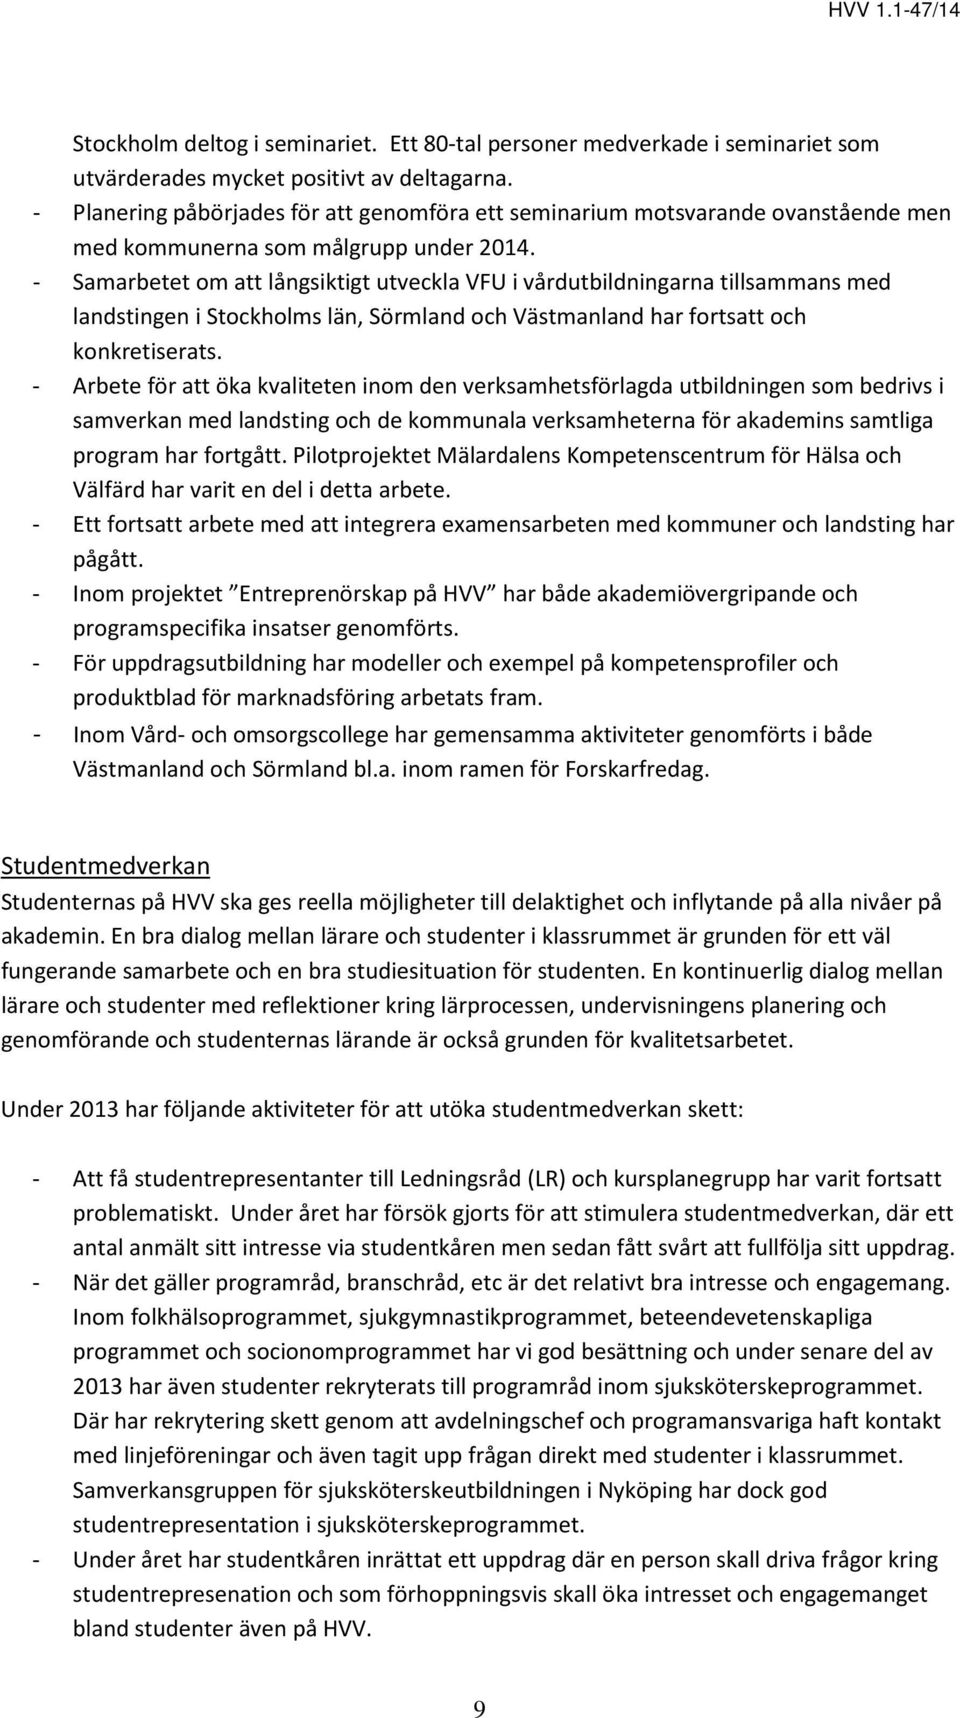 - Samarbetet om att långsiktigt utveckla VFU i vårdutbildningarna tillsammans med landstingen i Stockholms län, Sörmland och Västmanland har fortsatt och konkretiserats.